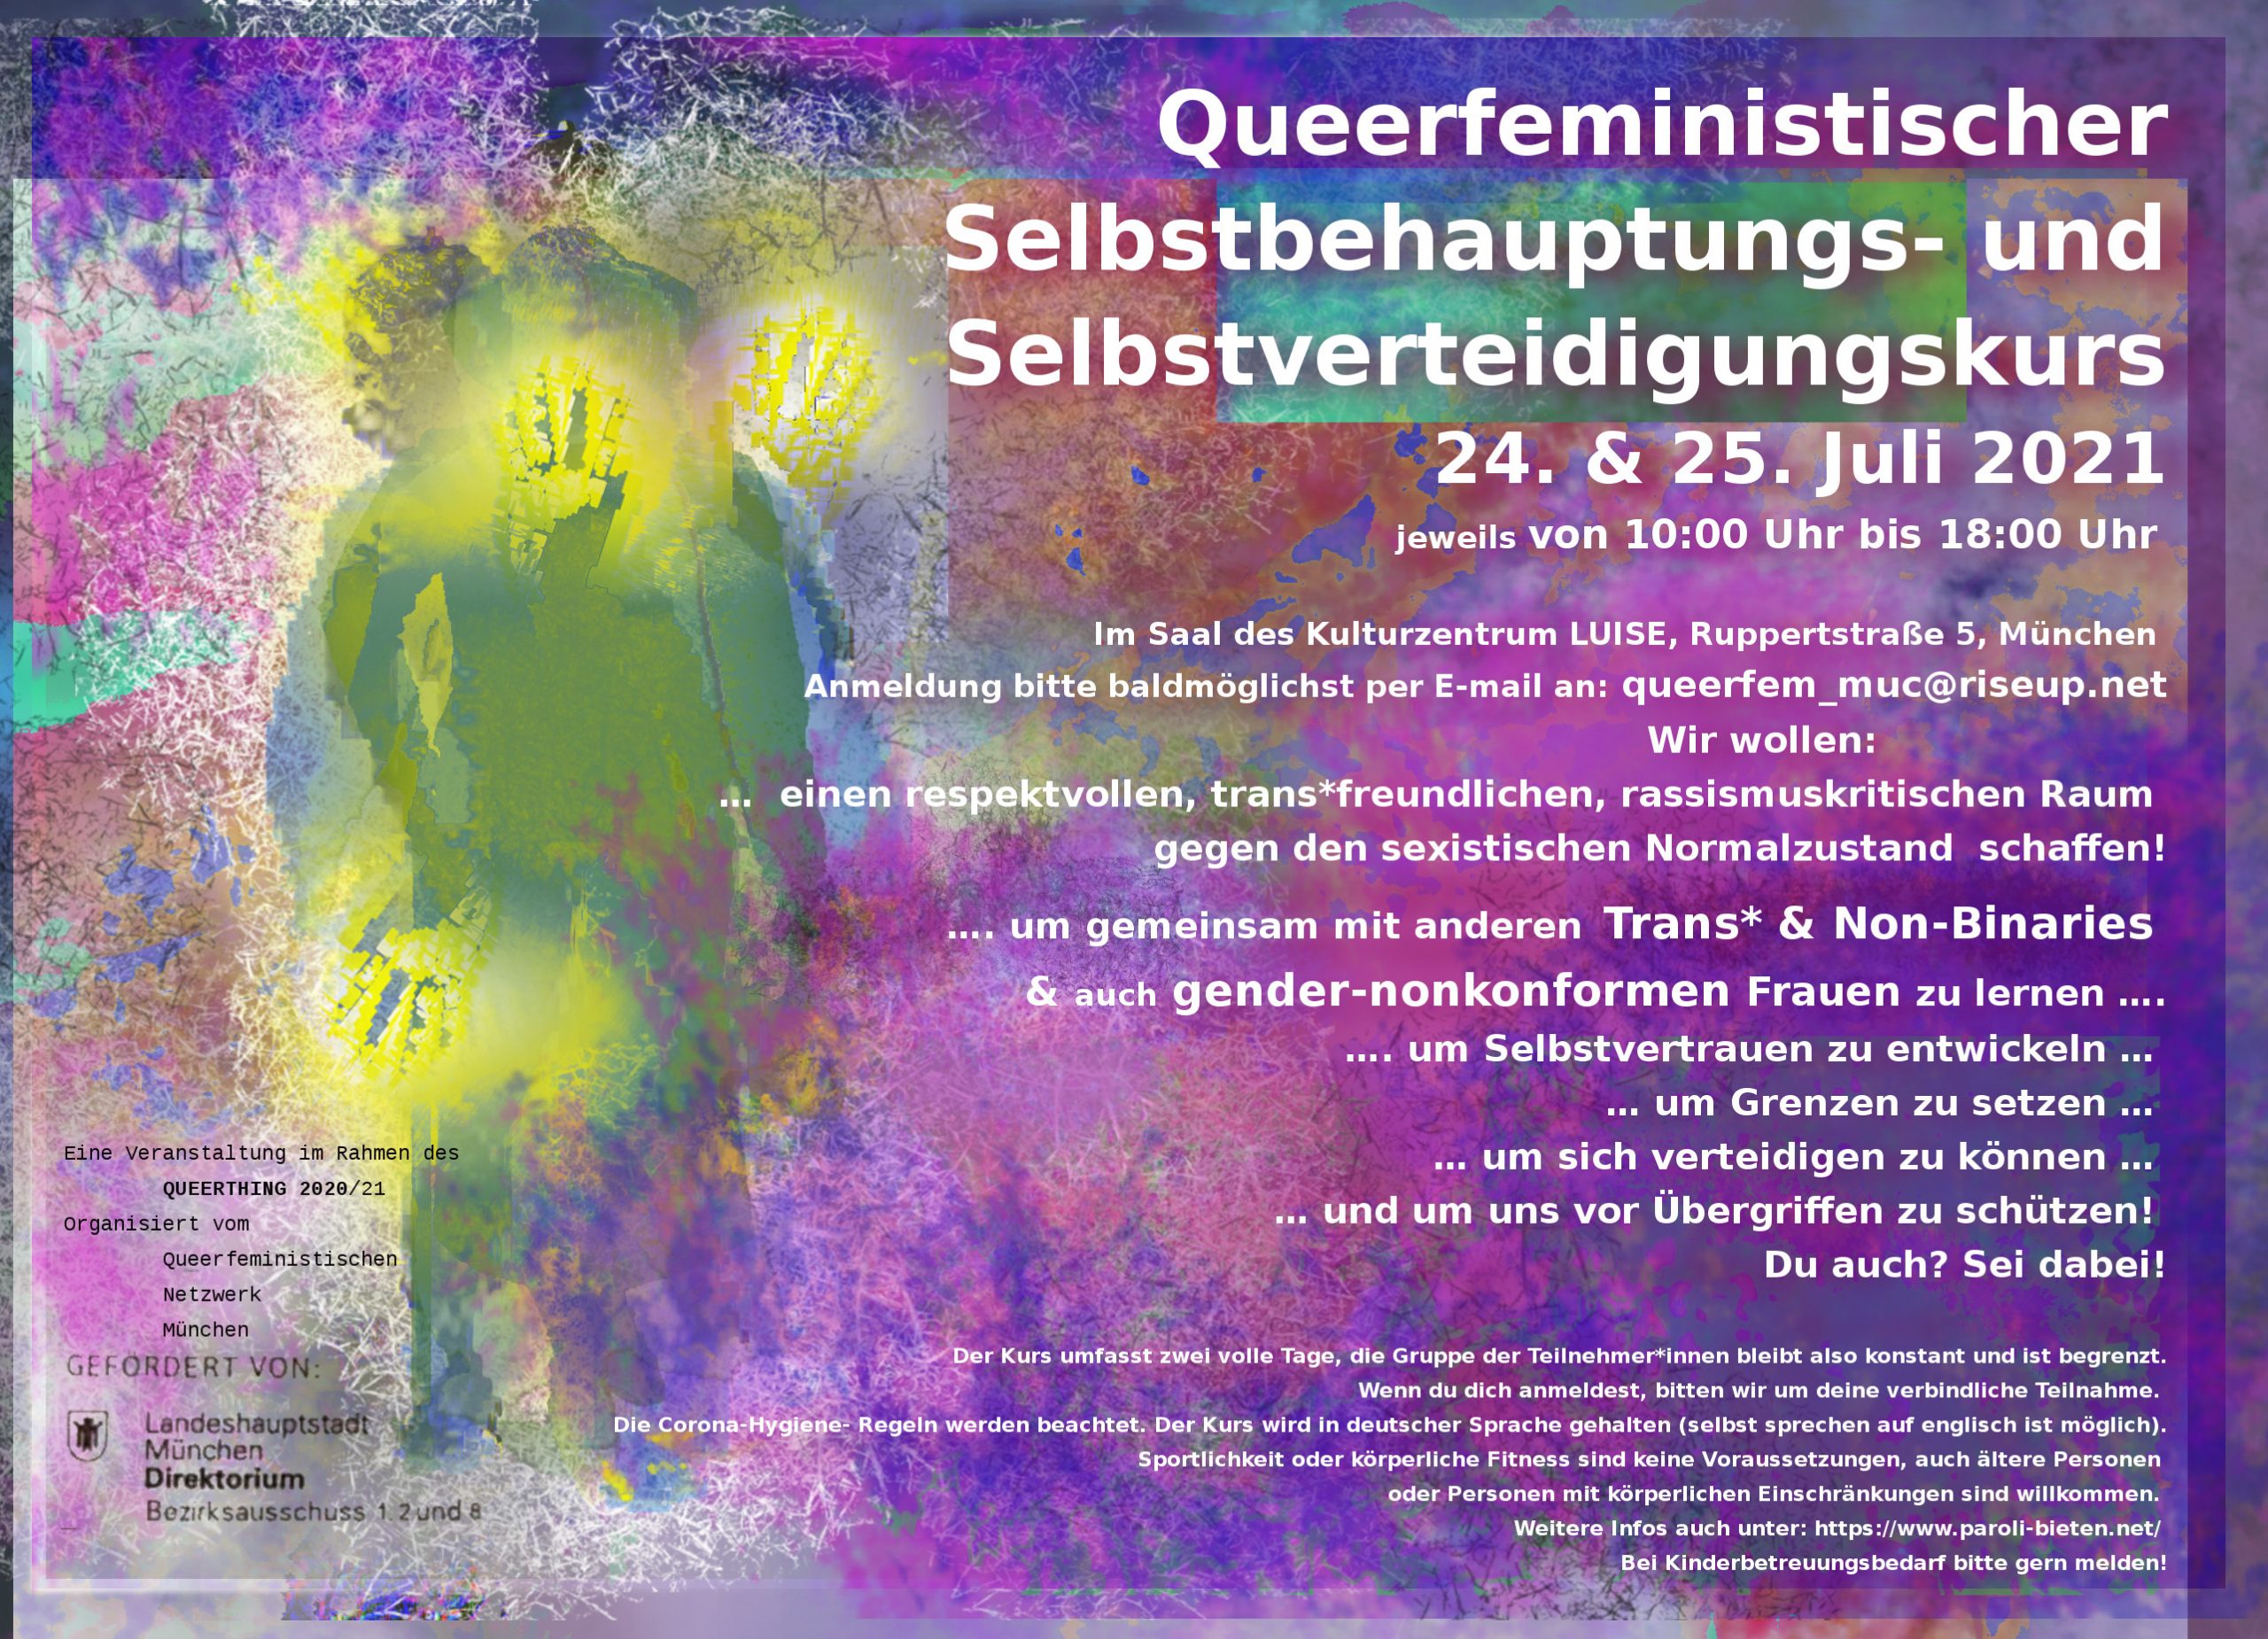 Queerfeministischer Selbstbehauptungs- und Selbstverteidigungskurs